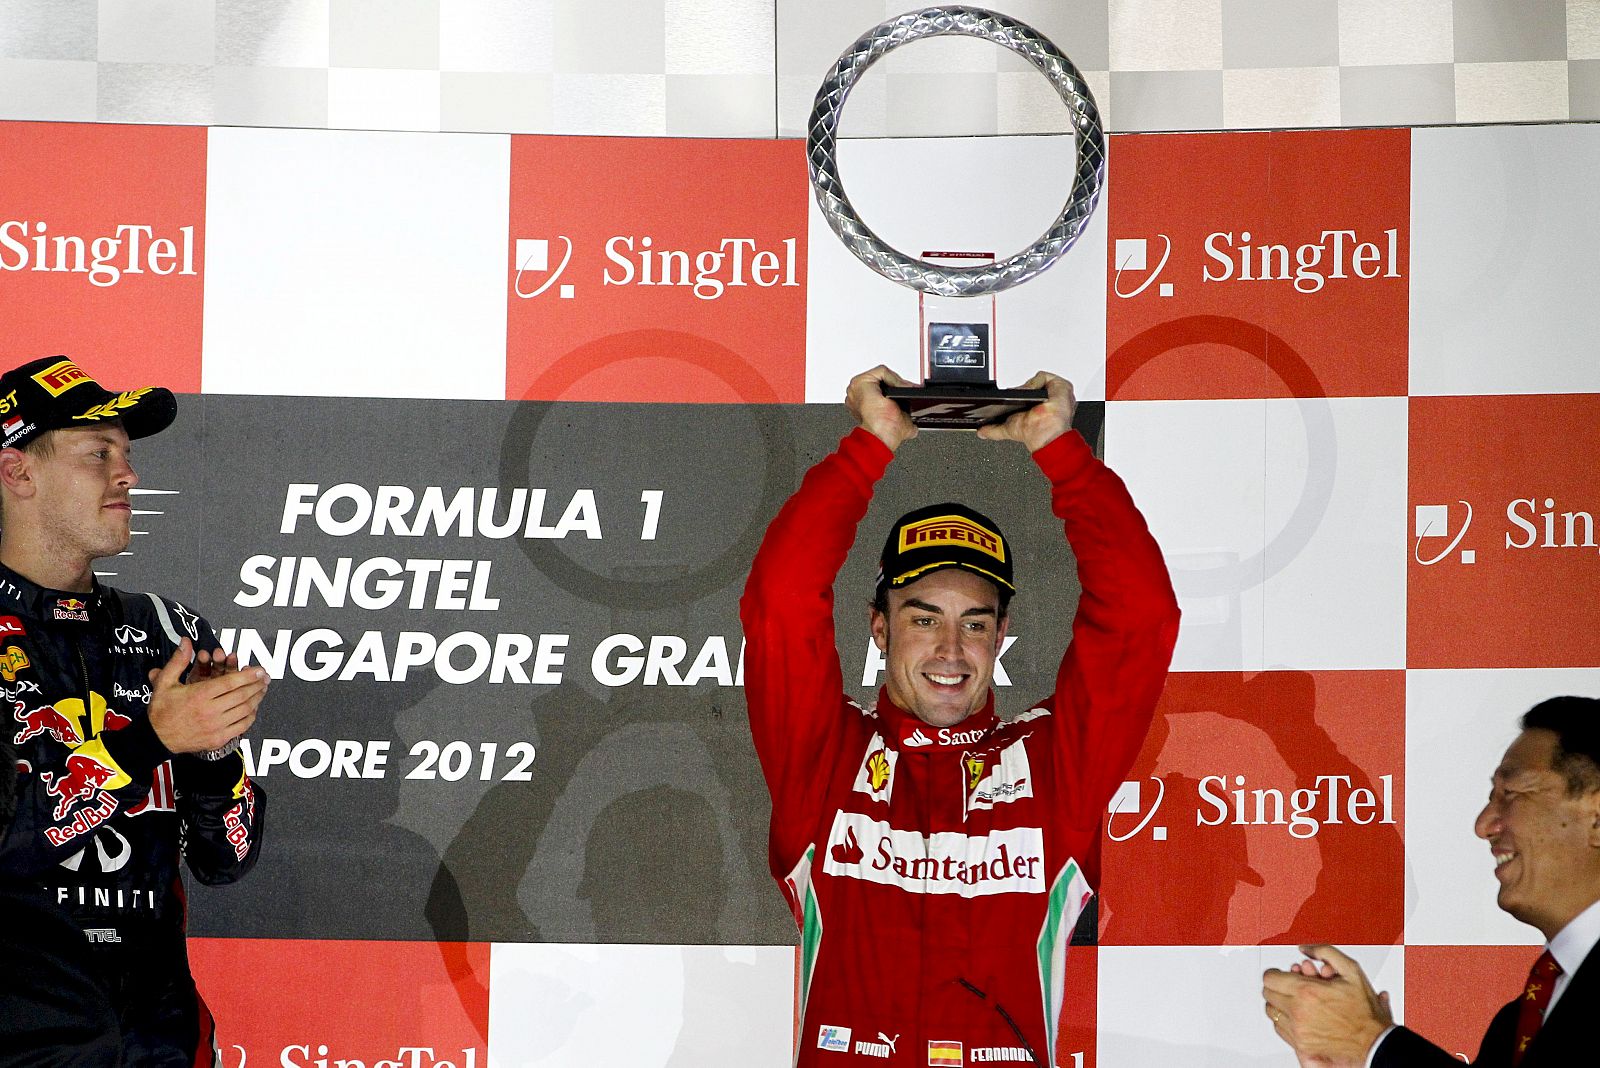 El piloto español de Fórmula Uno Fernando Alonso sostiene su trofeo después de finalizar en tercera posición en el Gran Premio de Singapur.